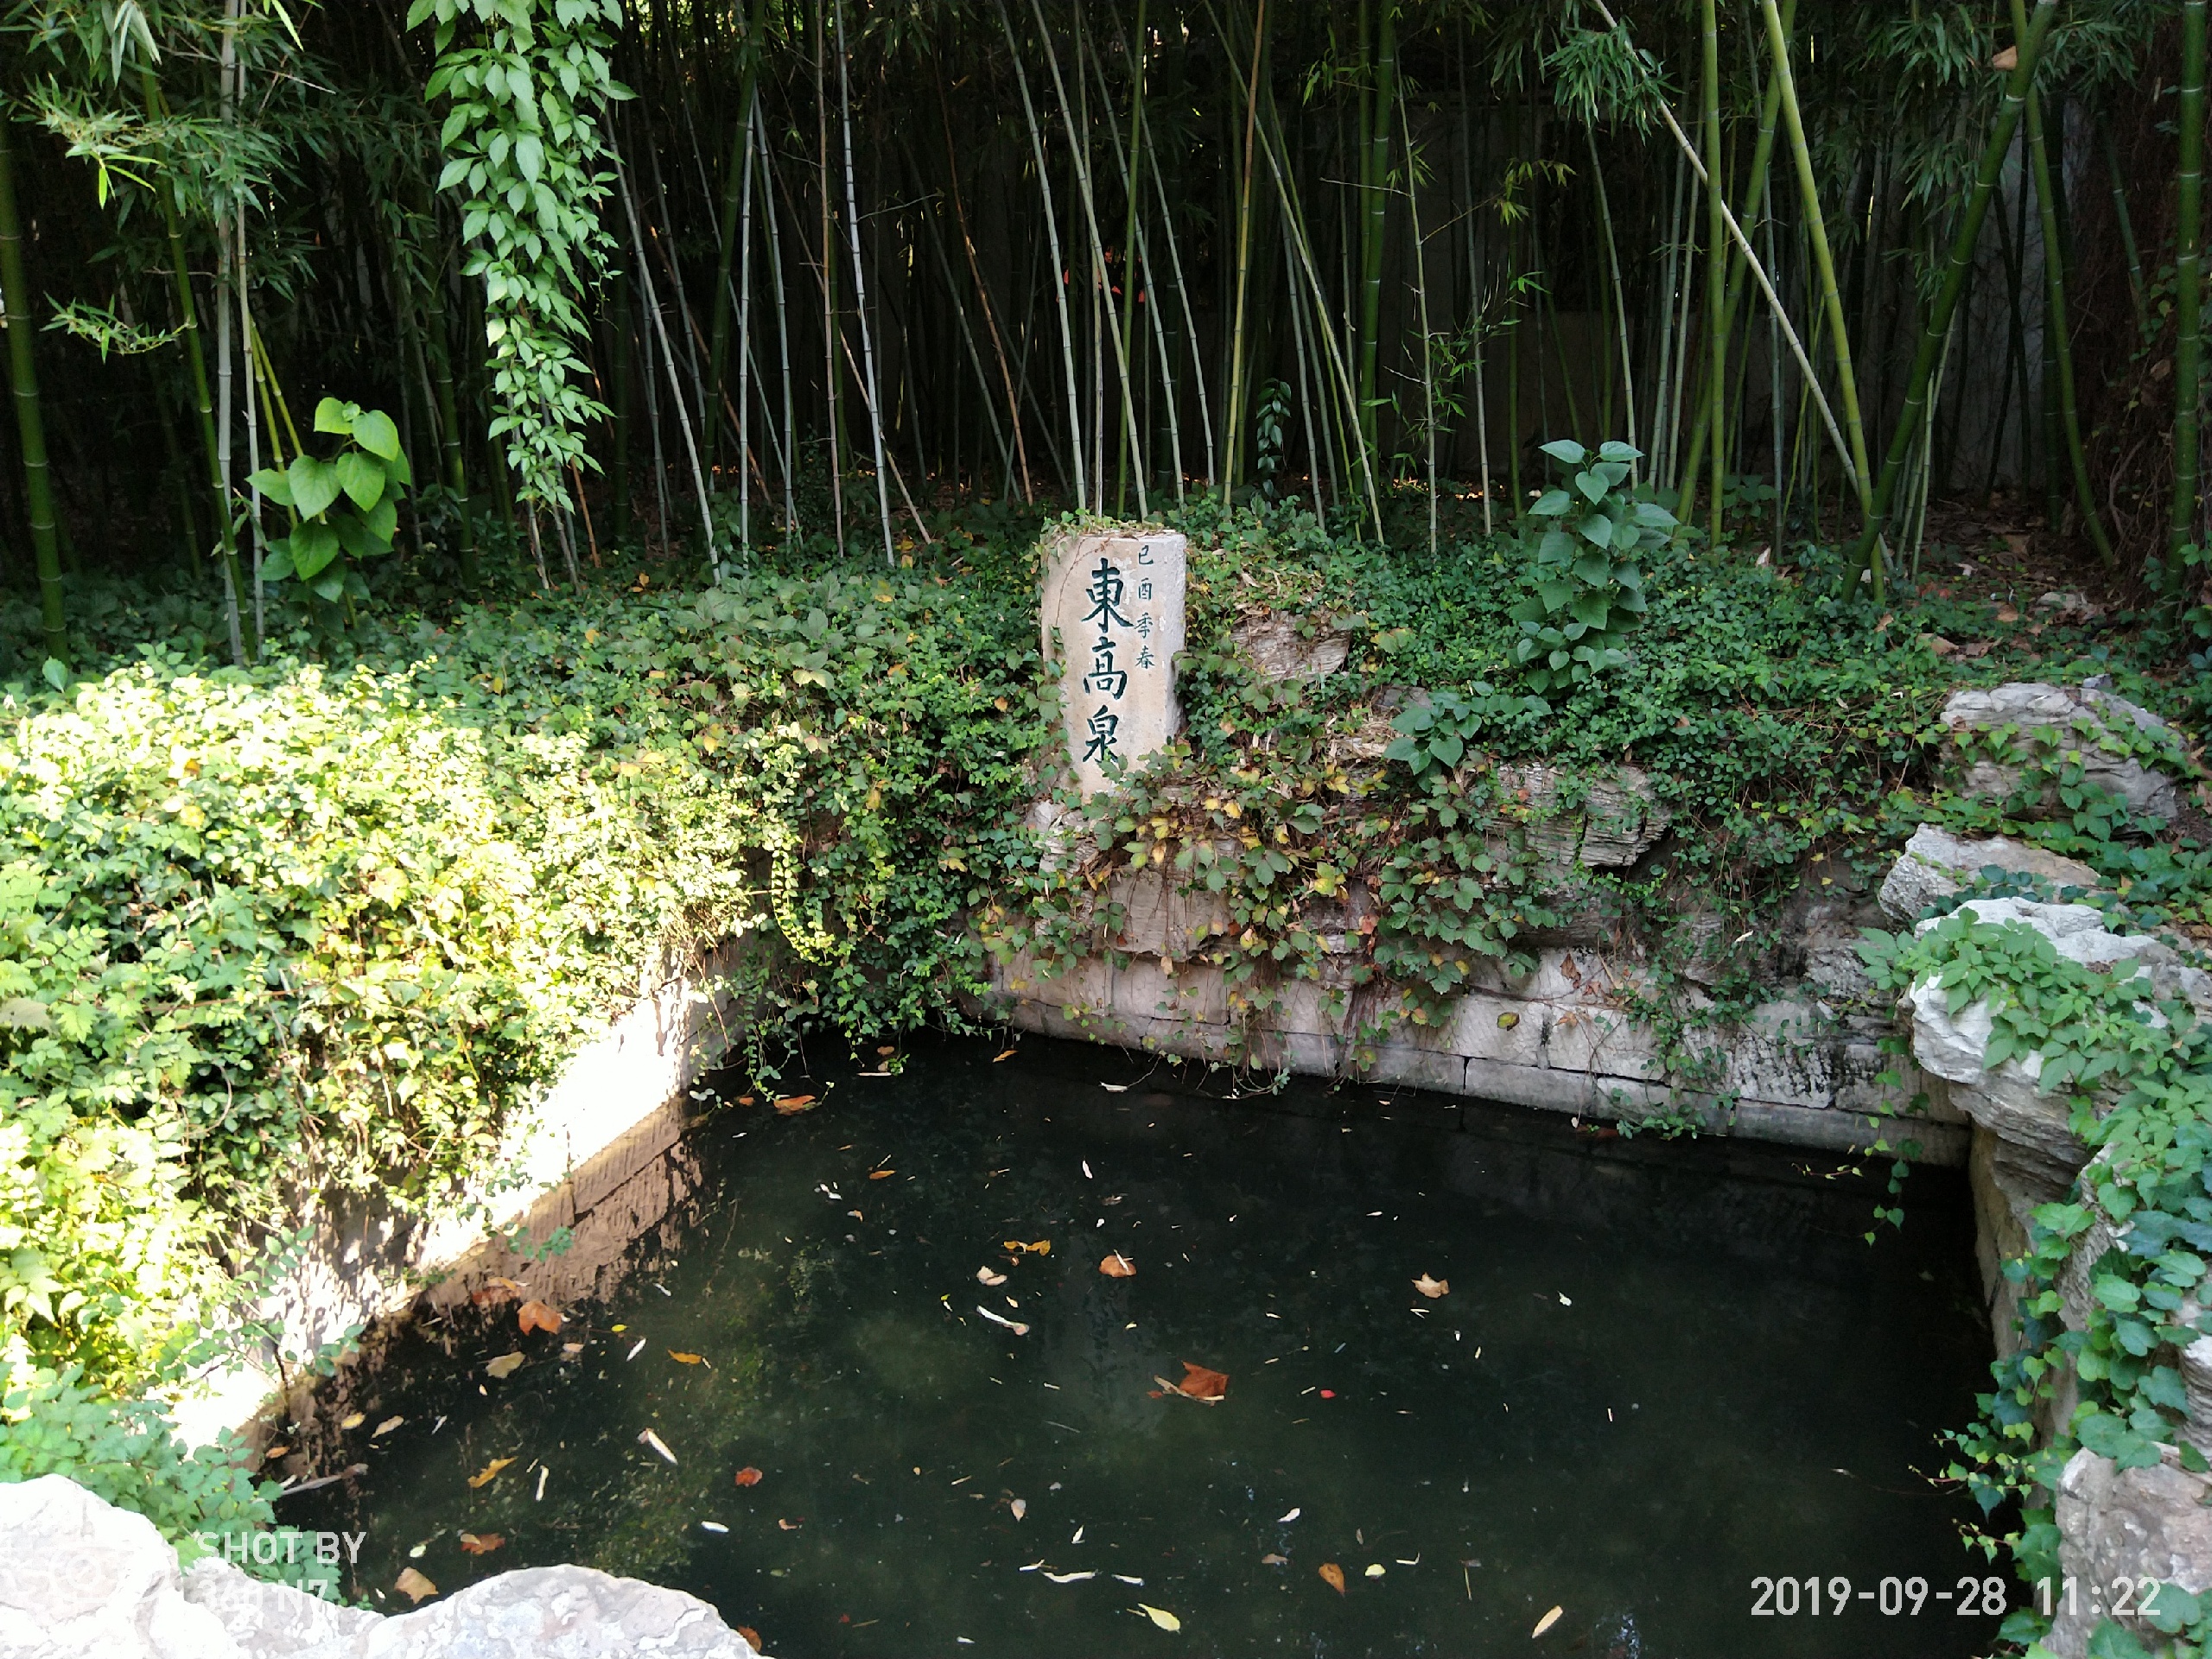 济南趵突泉景区有一个万竹园